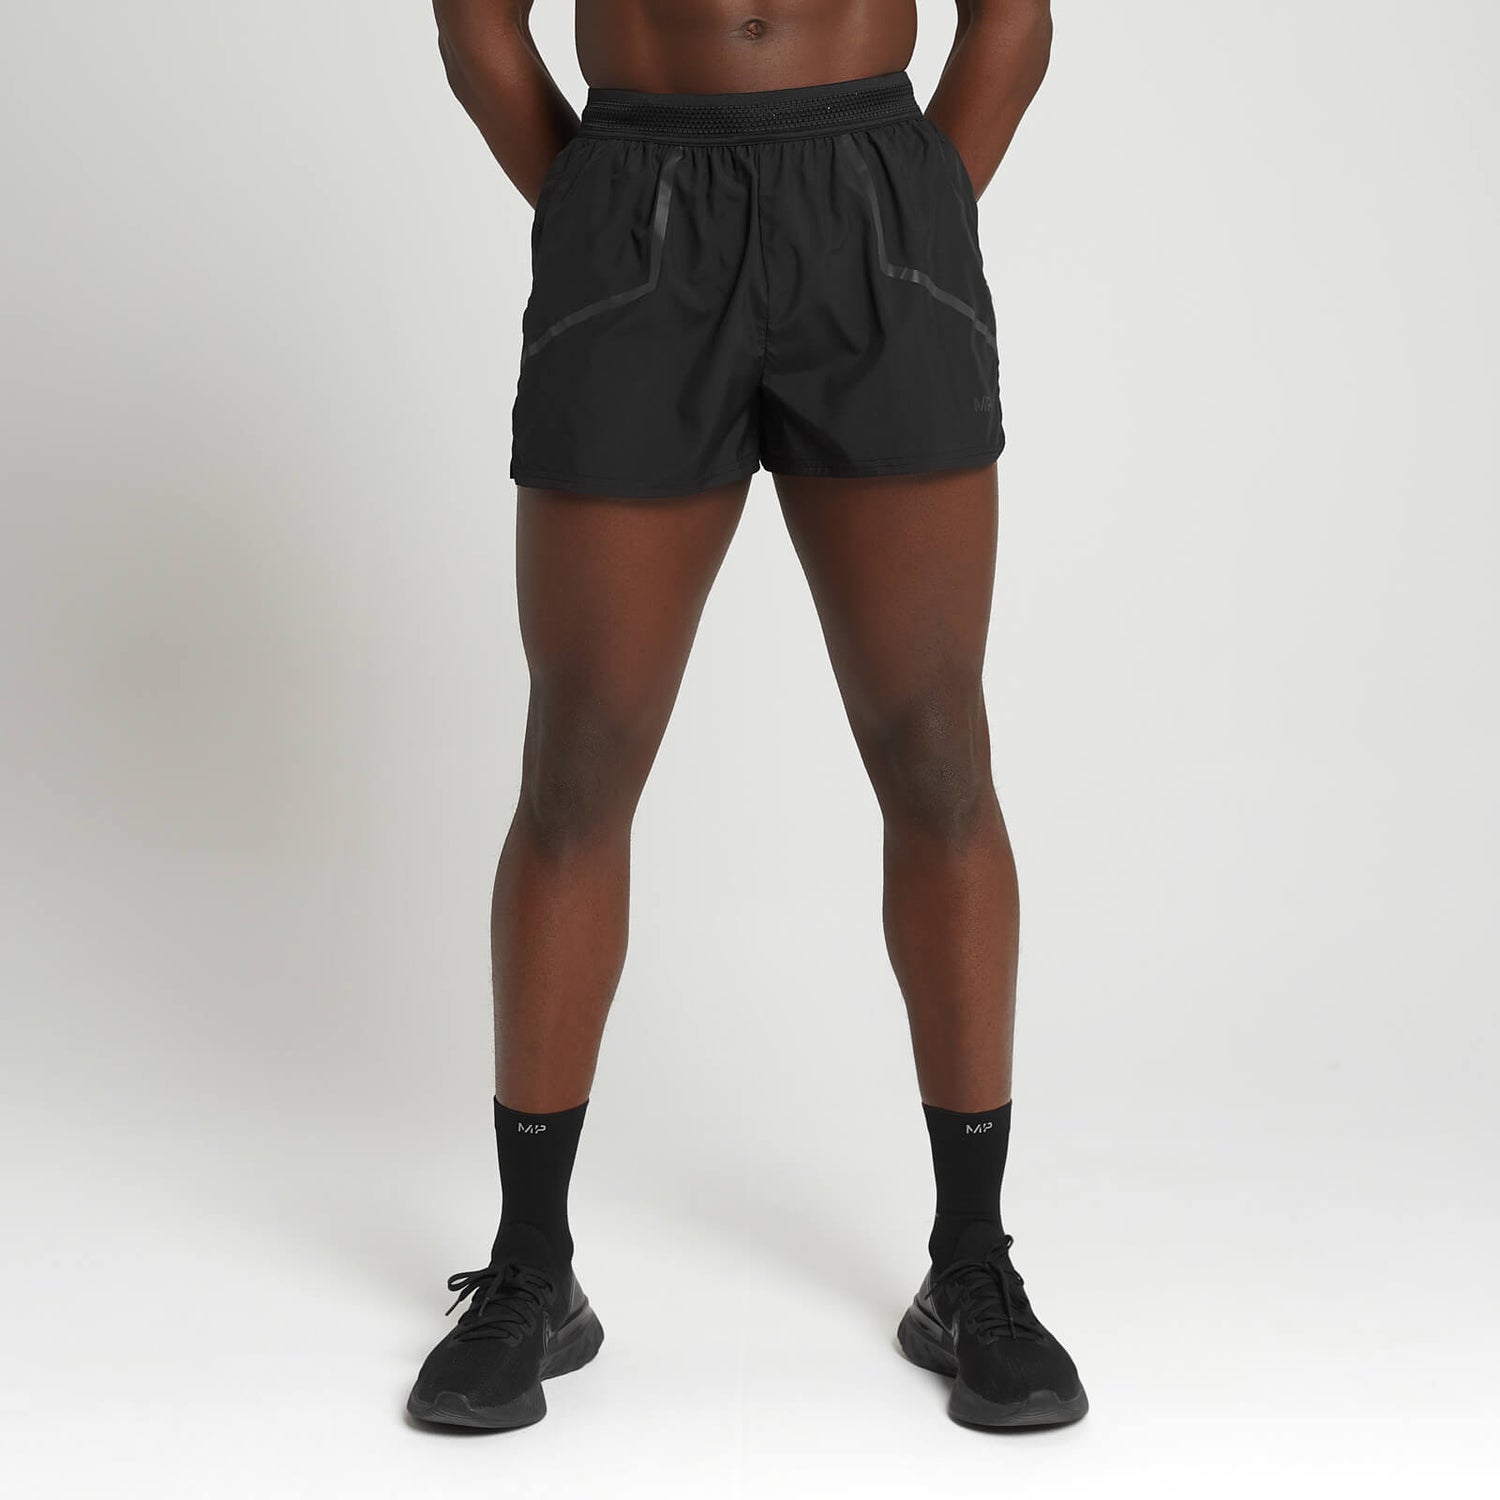 Pantalón corto Velocity Ultra con tiro de 7,60 cm para hombre de MP- Negro - L